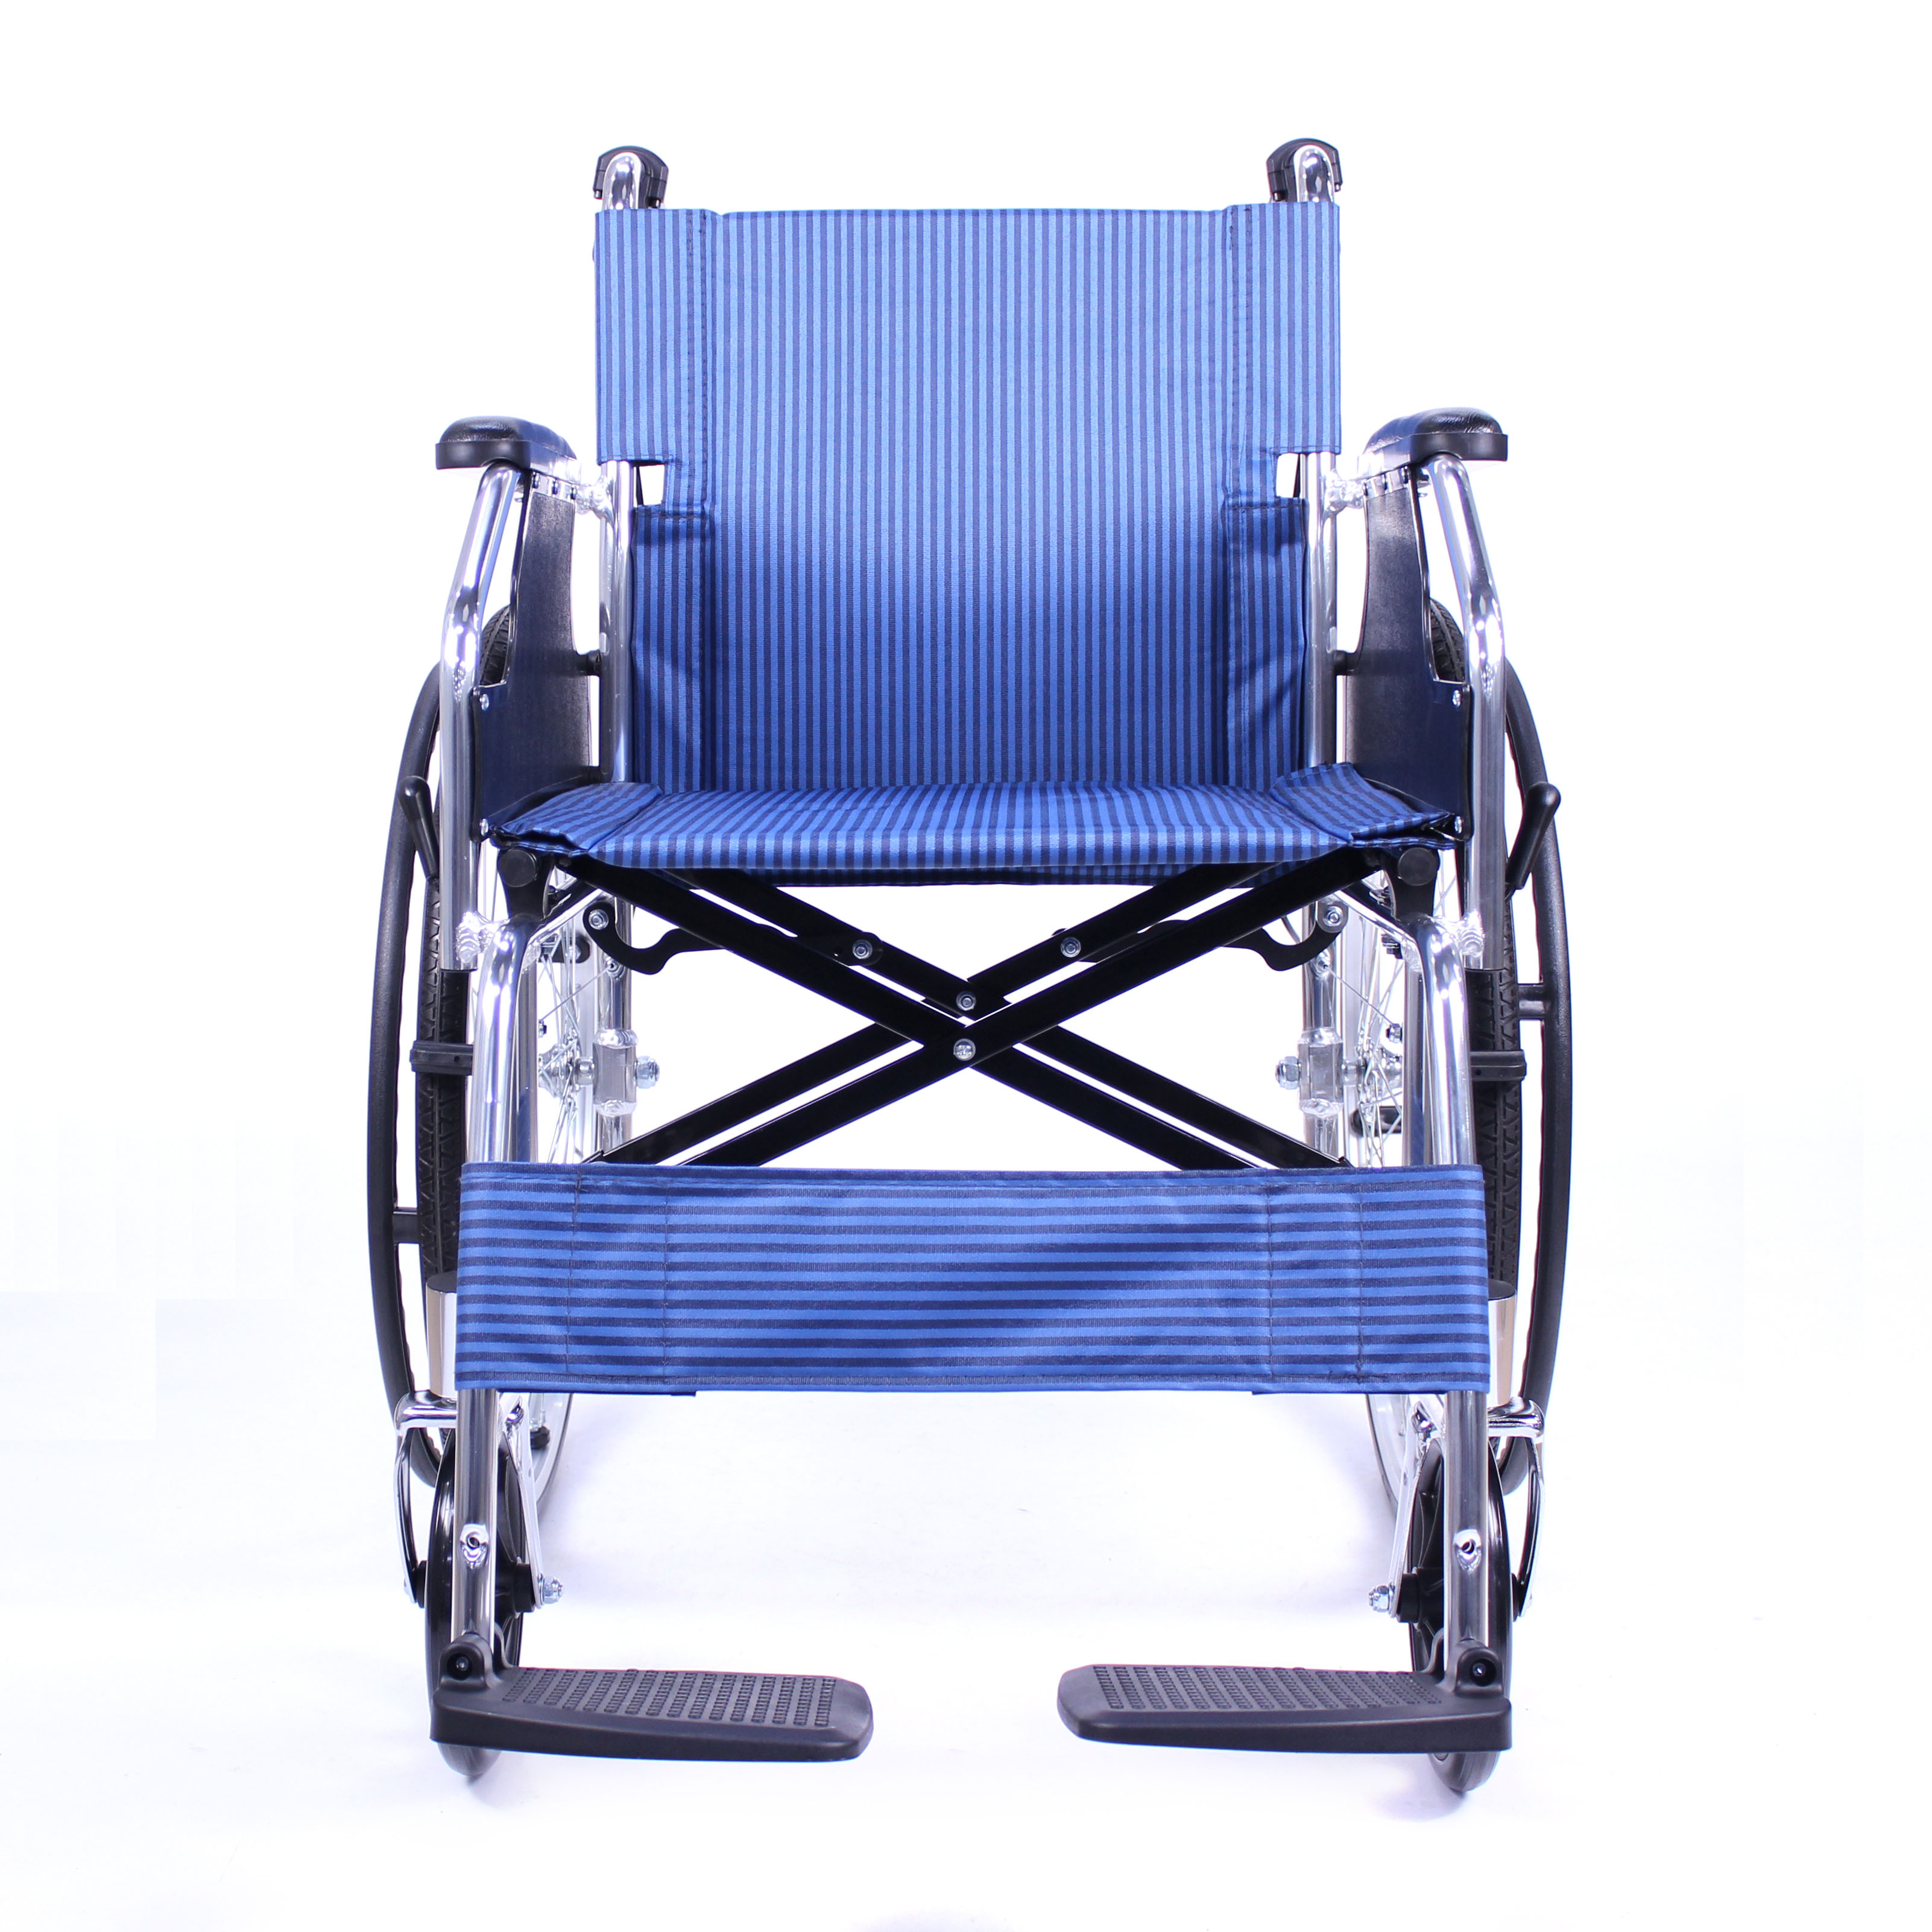 شراء الصين مصنع الصانع نوعية جيدة كرسي متحرك قابل للطي سبائك الألومنيوم كرسي متحرك ,الصين مصنع الصانع نوعية جيدة كرسي متحرك قابل للطي سبائك الألومنيوم كرسي متحرك الأسعار ·الصين مصنع الصانع نوعية جيدة كرسي متحرك قابل للطي سبائك الألومنيوم كرسي متحرك العلامات التجارية ,الصين مصنع الصانع نوعية جيدة كرسي متحرك قابل للطي سبائك الألومنيوم كرسي متحرك الصانع ,الصين مصنع الصانع نوعية جيدة كرسي متحرك قابل للطي سبائك الألومنيوم كرسي متحرك اقتباس ·الصين مصنع الصانع نوعية جيدة كرسي متحرك قابل للطي سبائك الألومنيوم كرسي متحرك الشركة